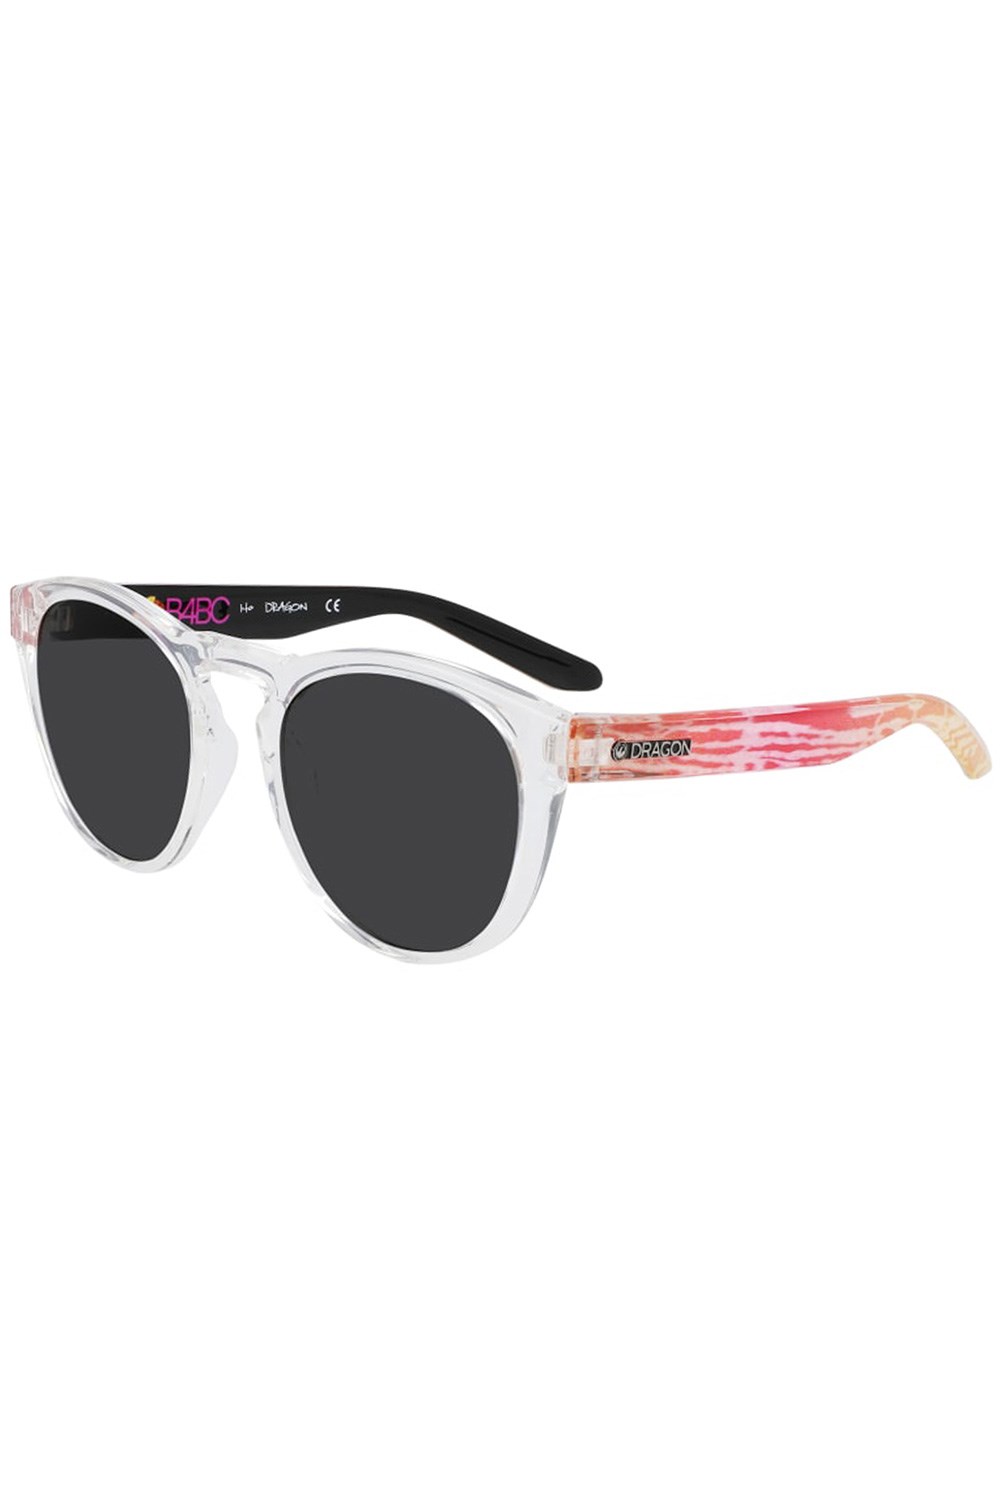 Opus Unisex Sunglasses -